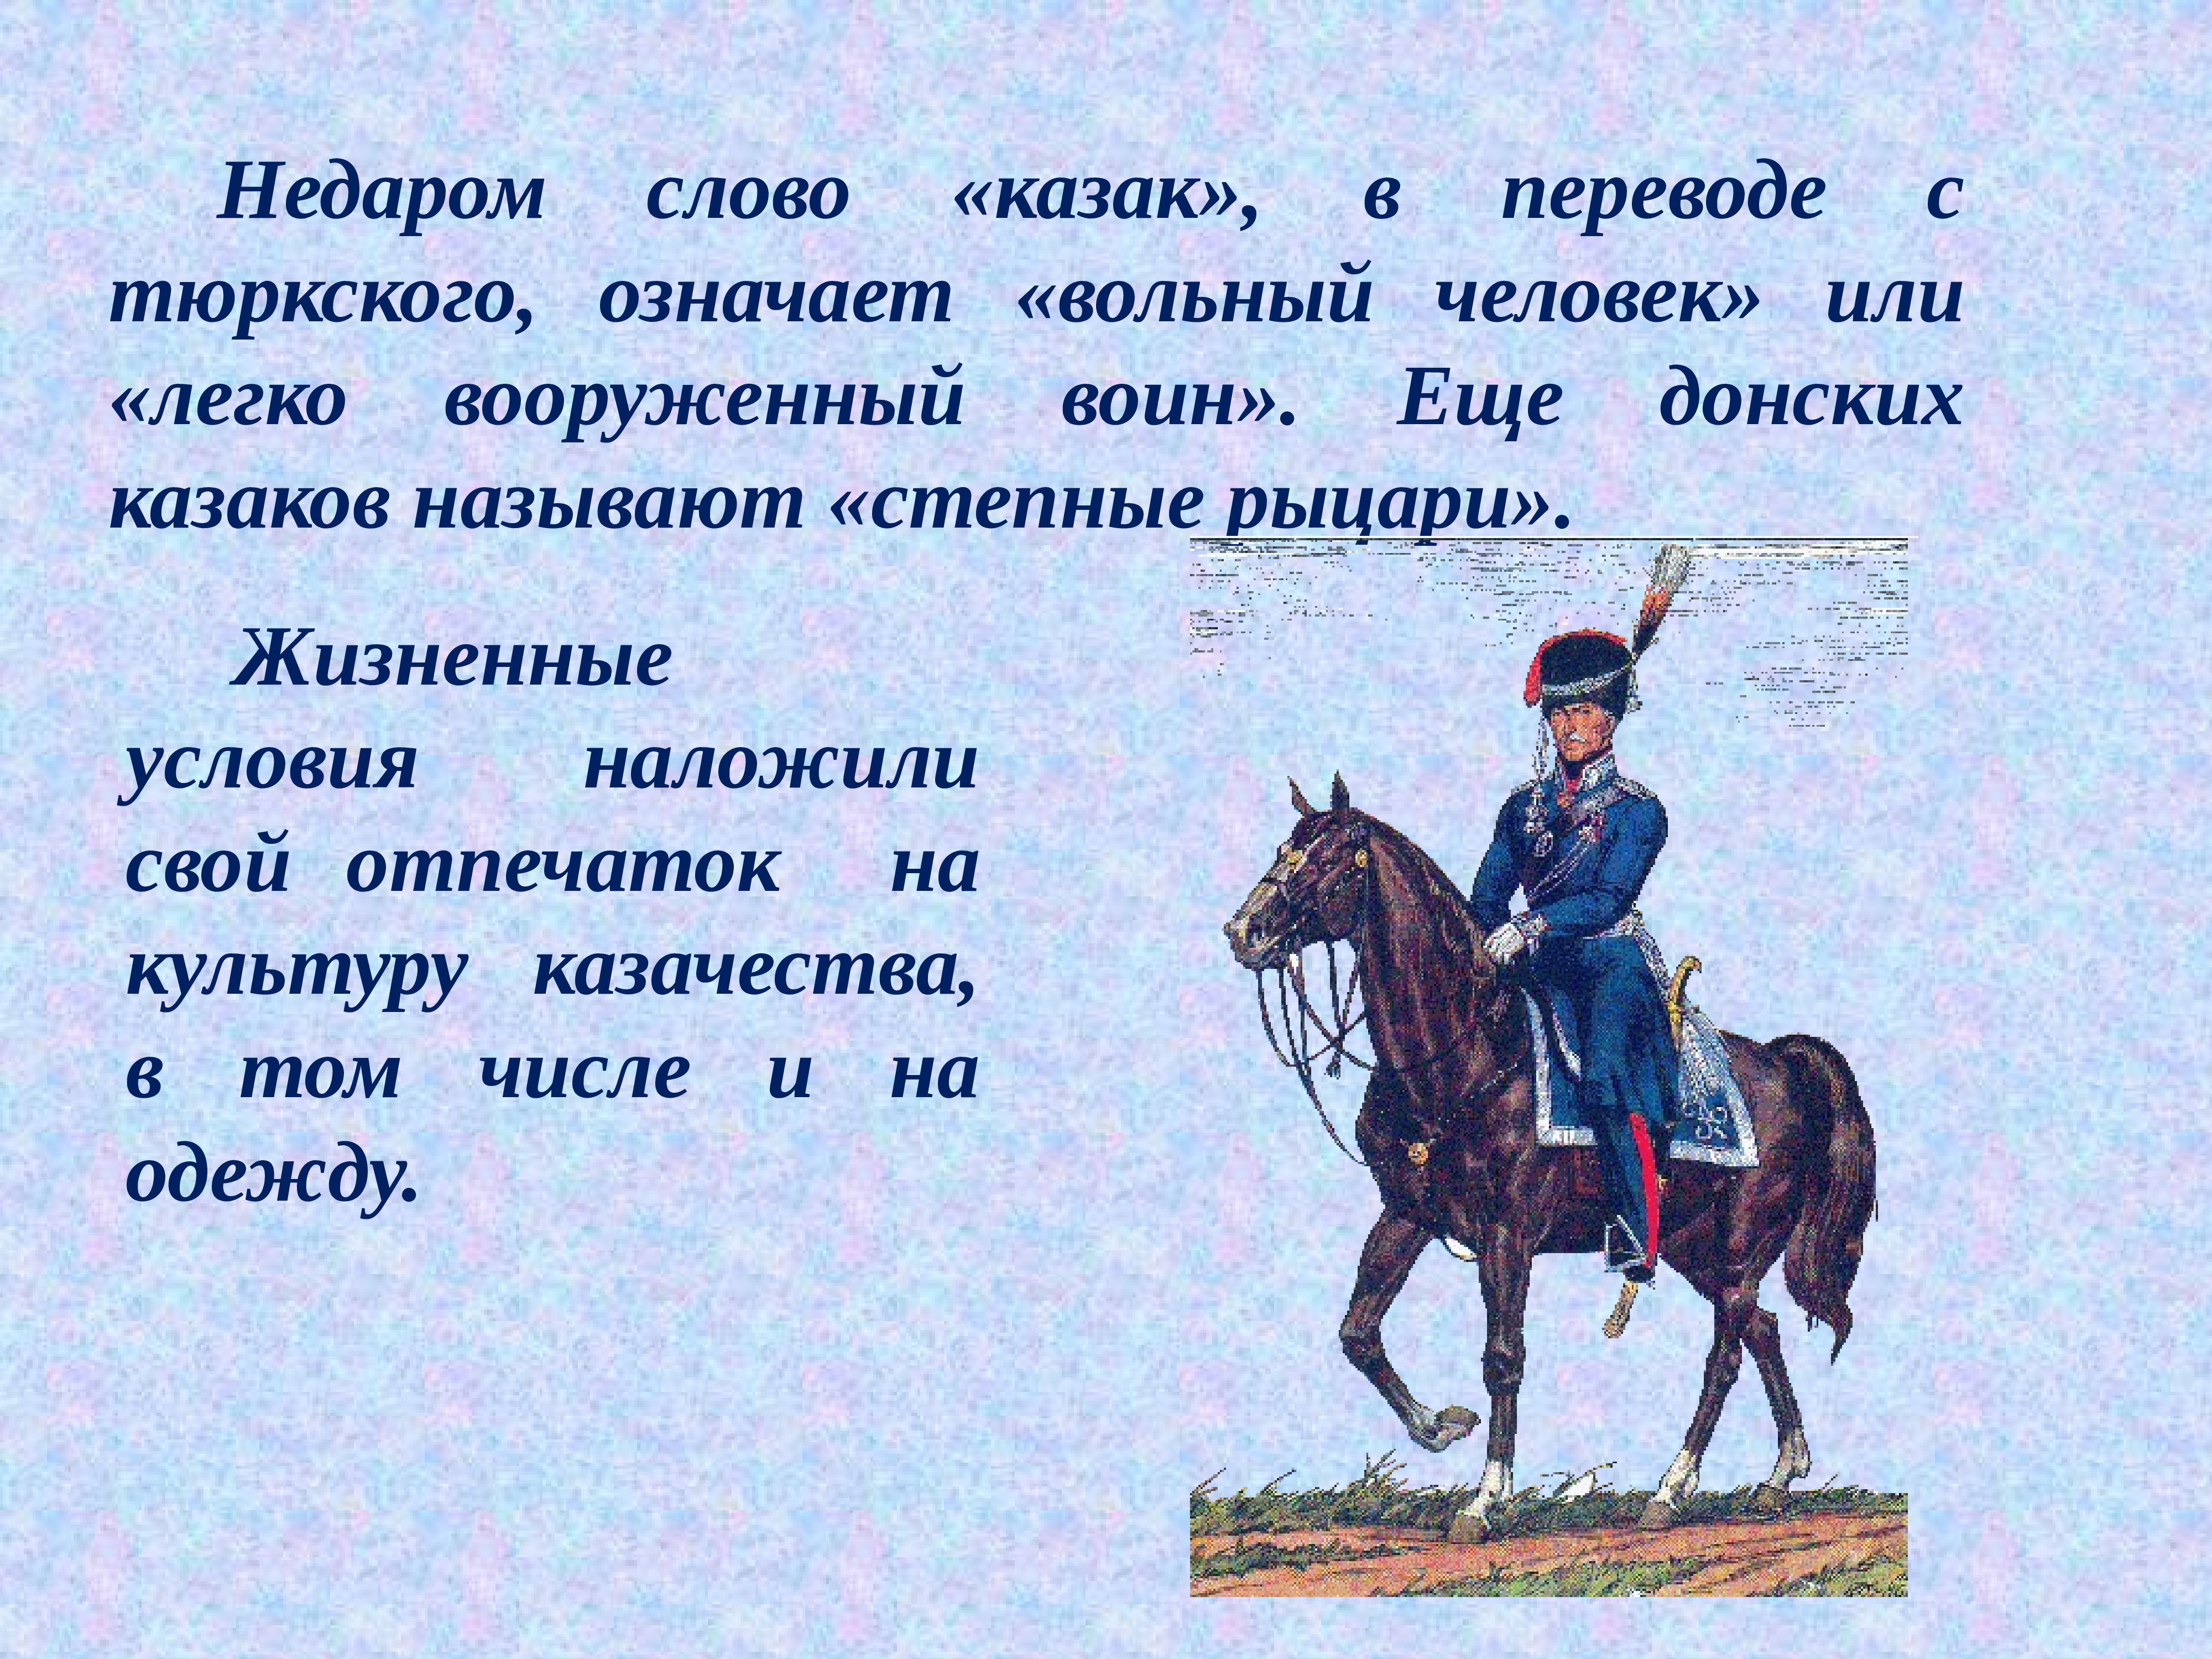 Казак в переводе означает. Появление казачества. Донские казаки. Происхождение слова казак. Название Казаков.